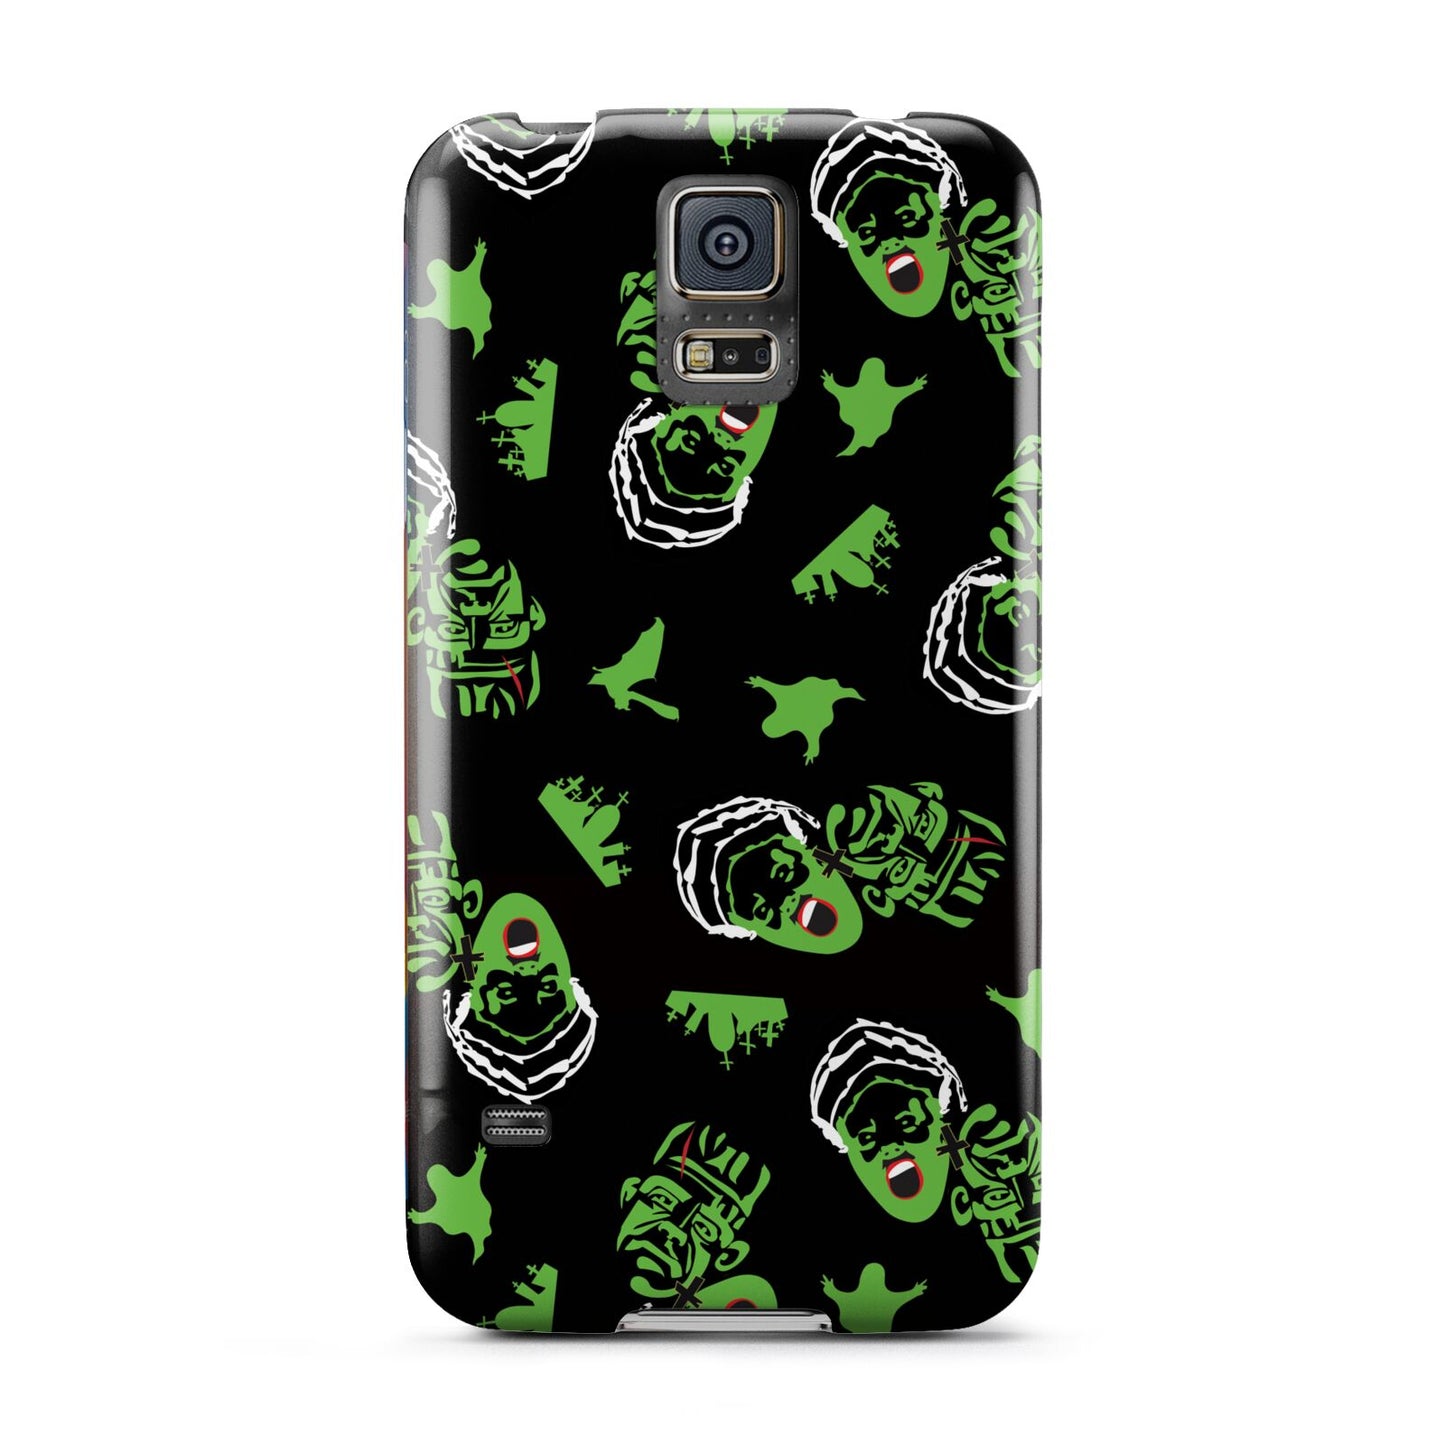 Movie Monster Samsung Galaxy S5 Case